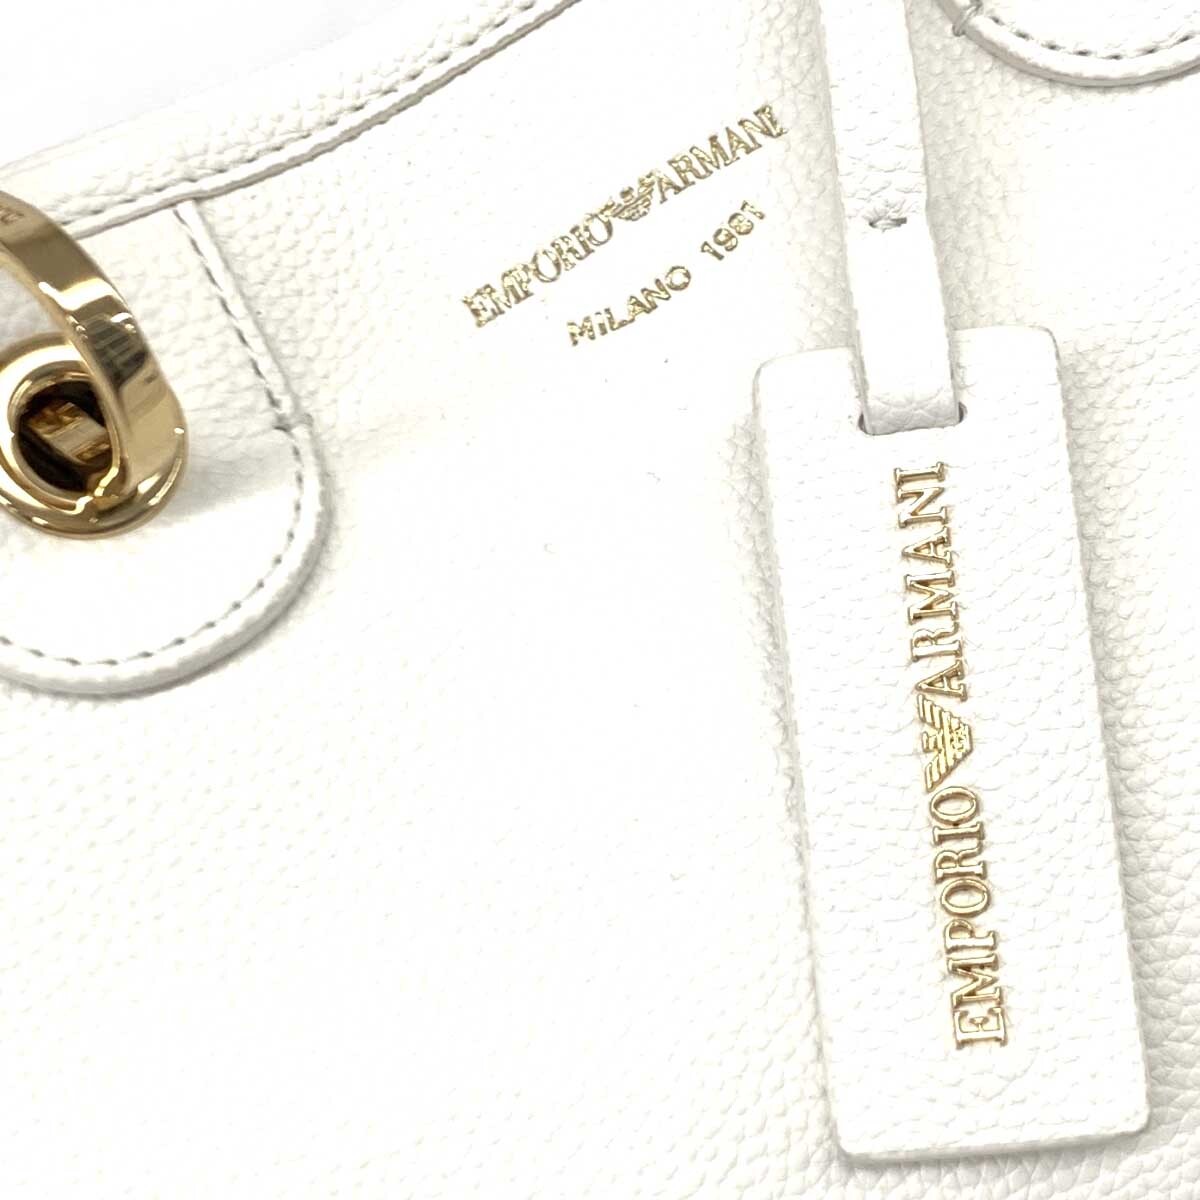  хороший *EMPORIO ARMANI Emporio Armani MyEAshopa-tia принт маленький 2WAY сумка * белый PVC женский bag сумка 